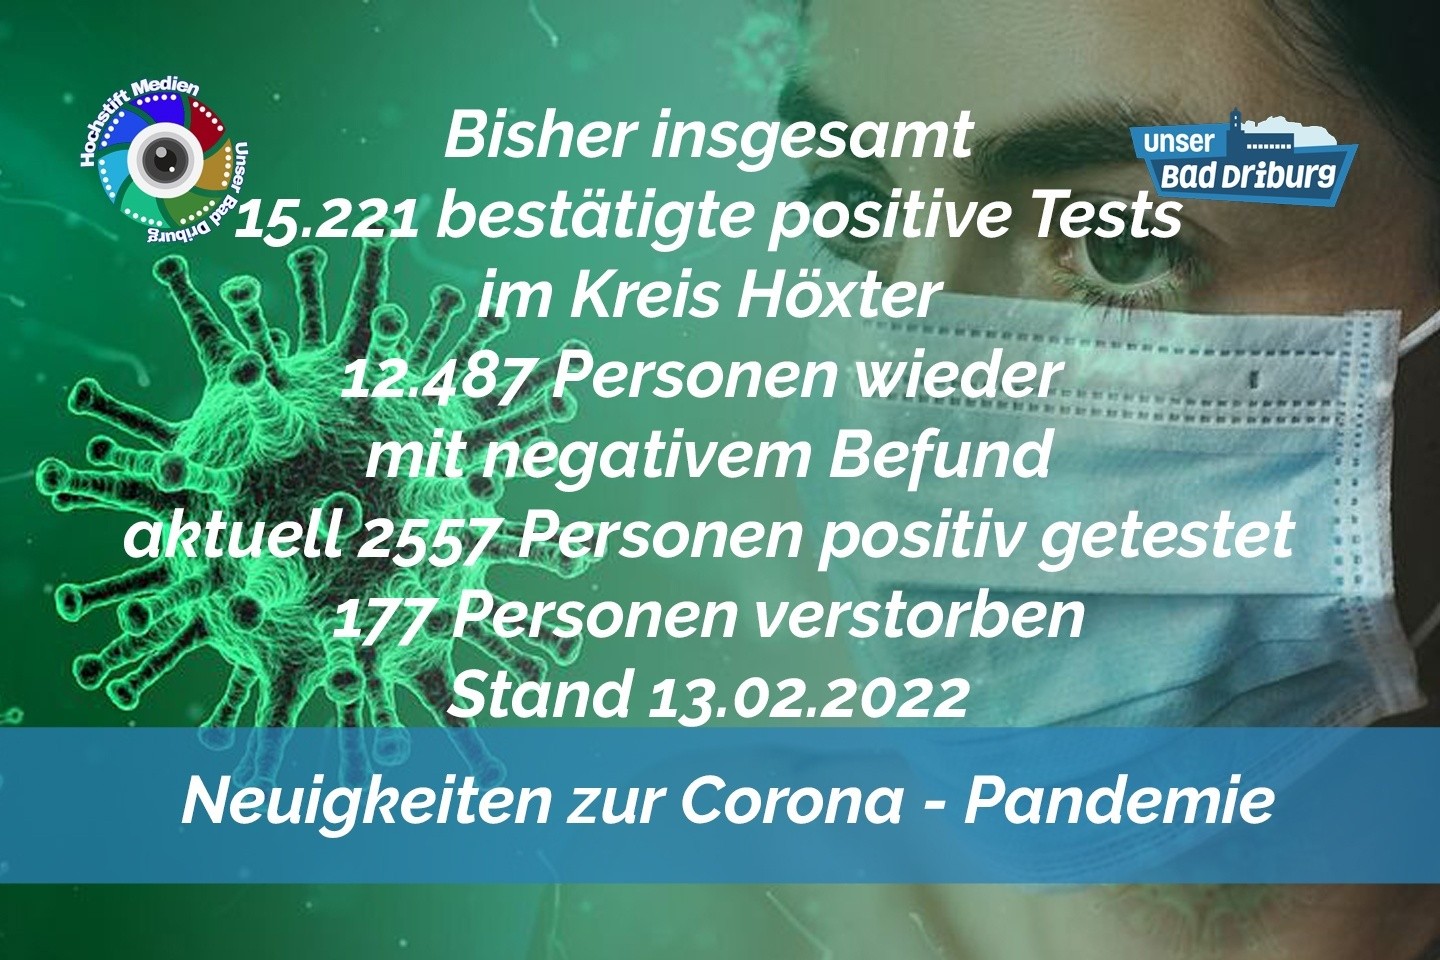 Update 13. Februar 2022: 185 weitere amtlich positive Tests im Kreis Höxter